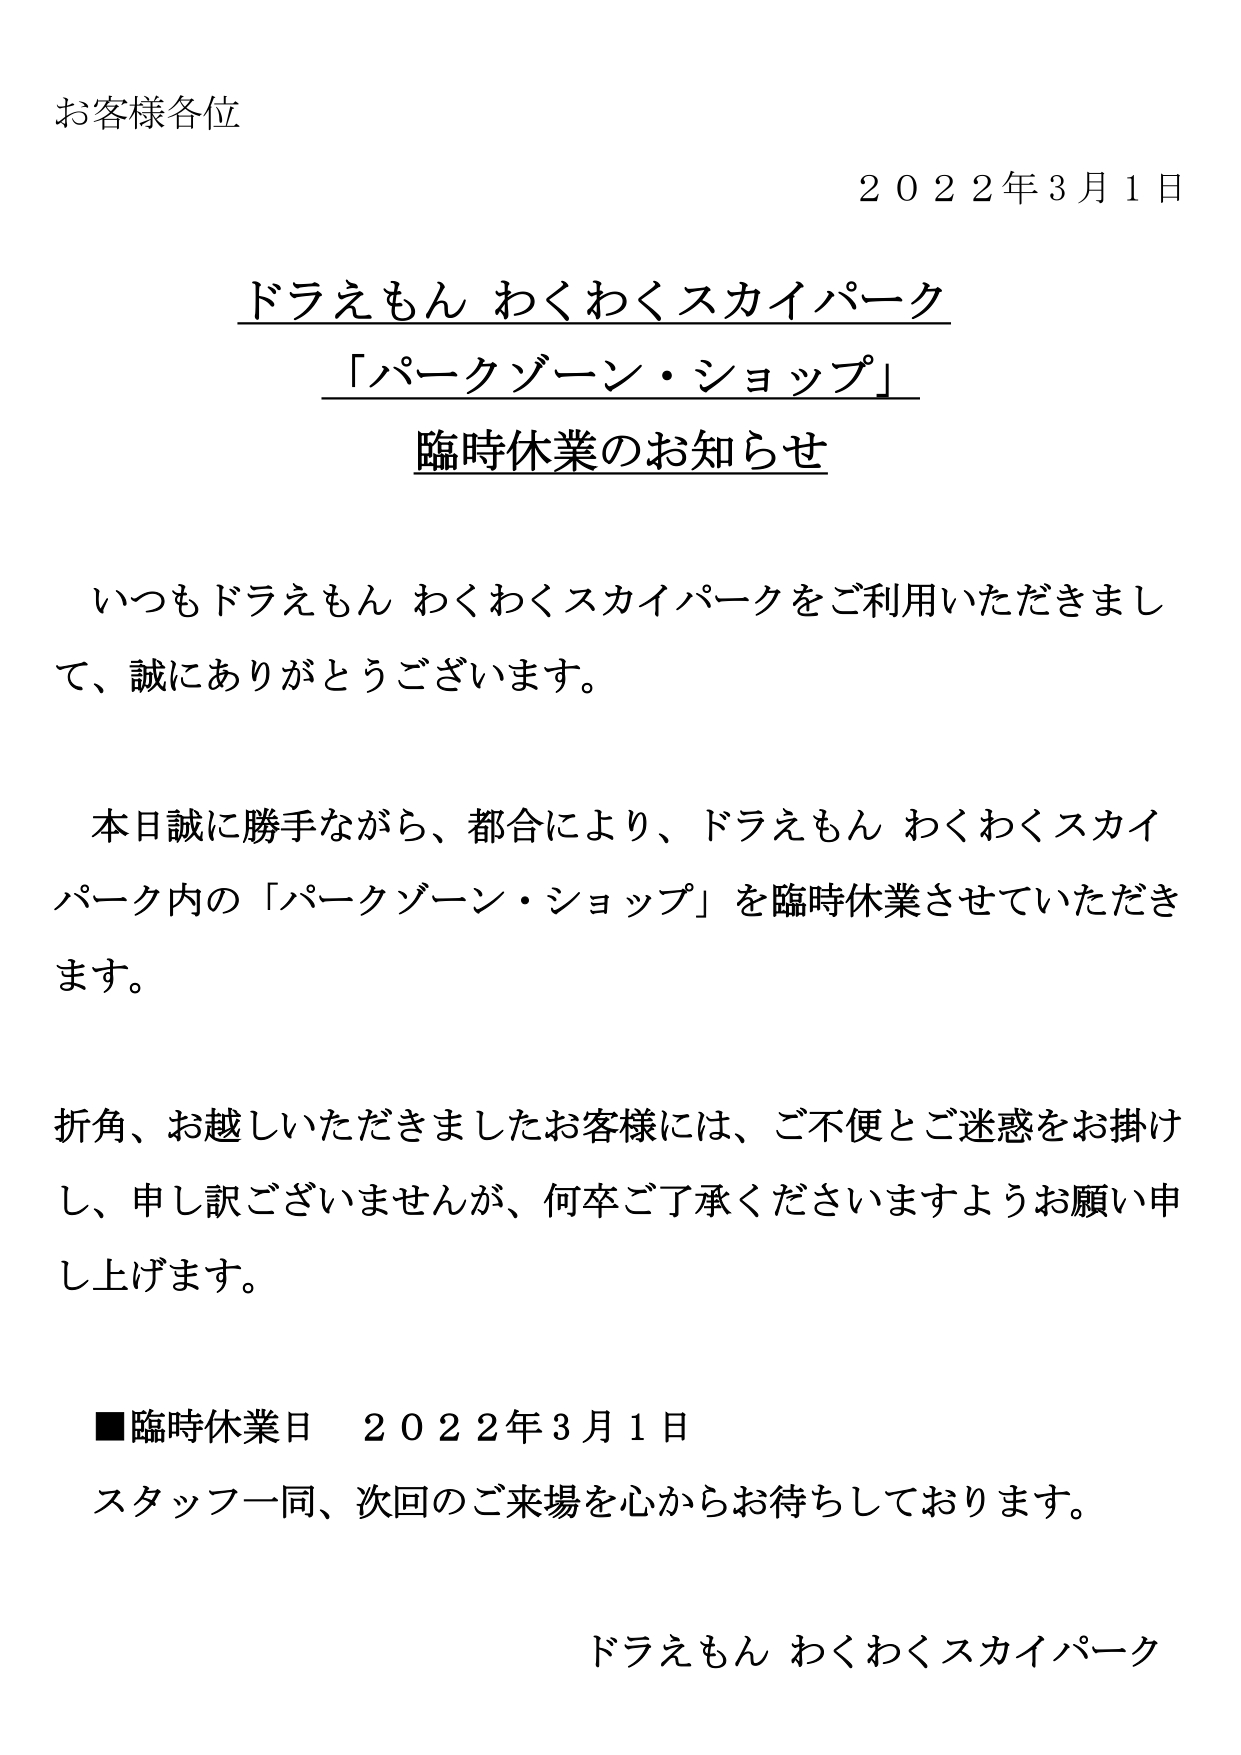 ShoPro修正案_20220227「施設休業のお知らせ」_page-0001 (1).jpg